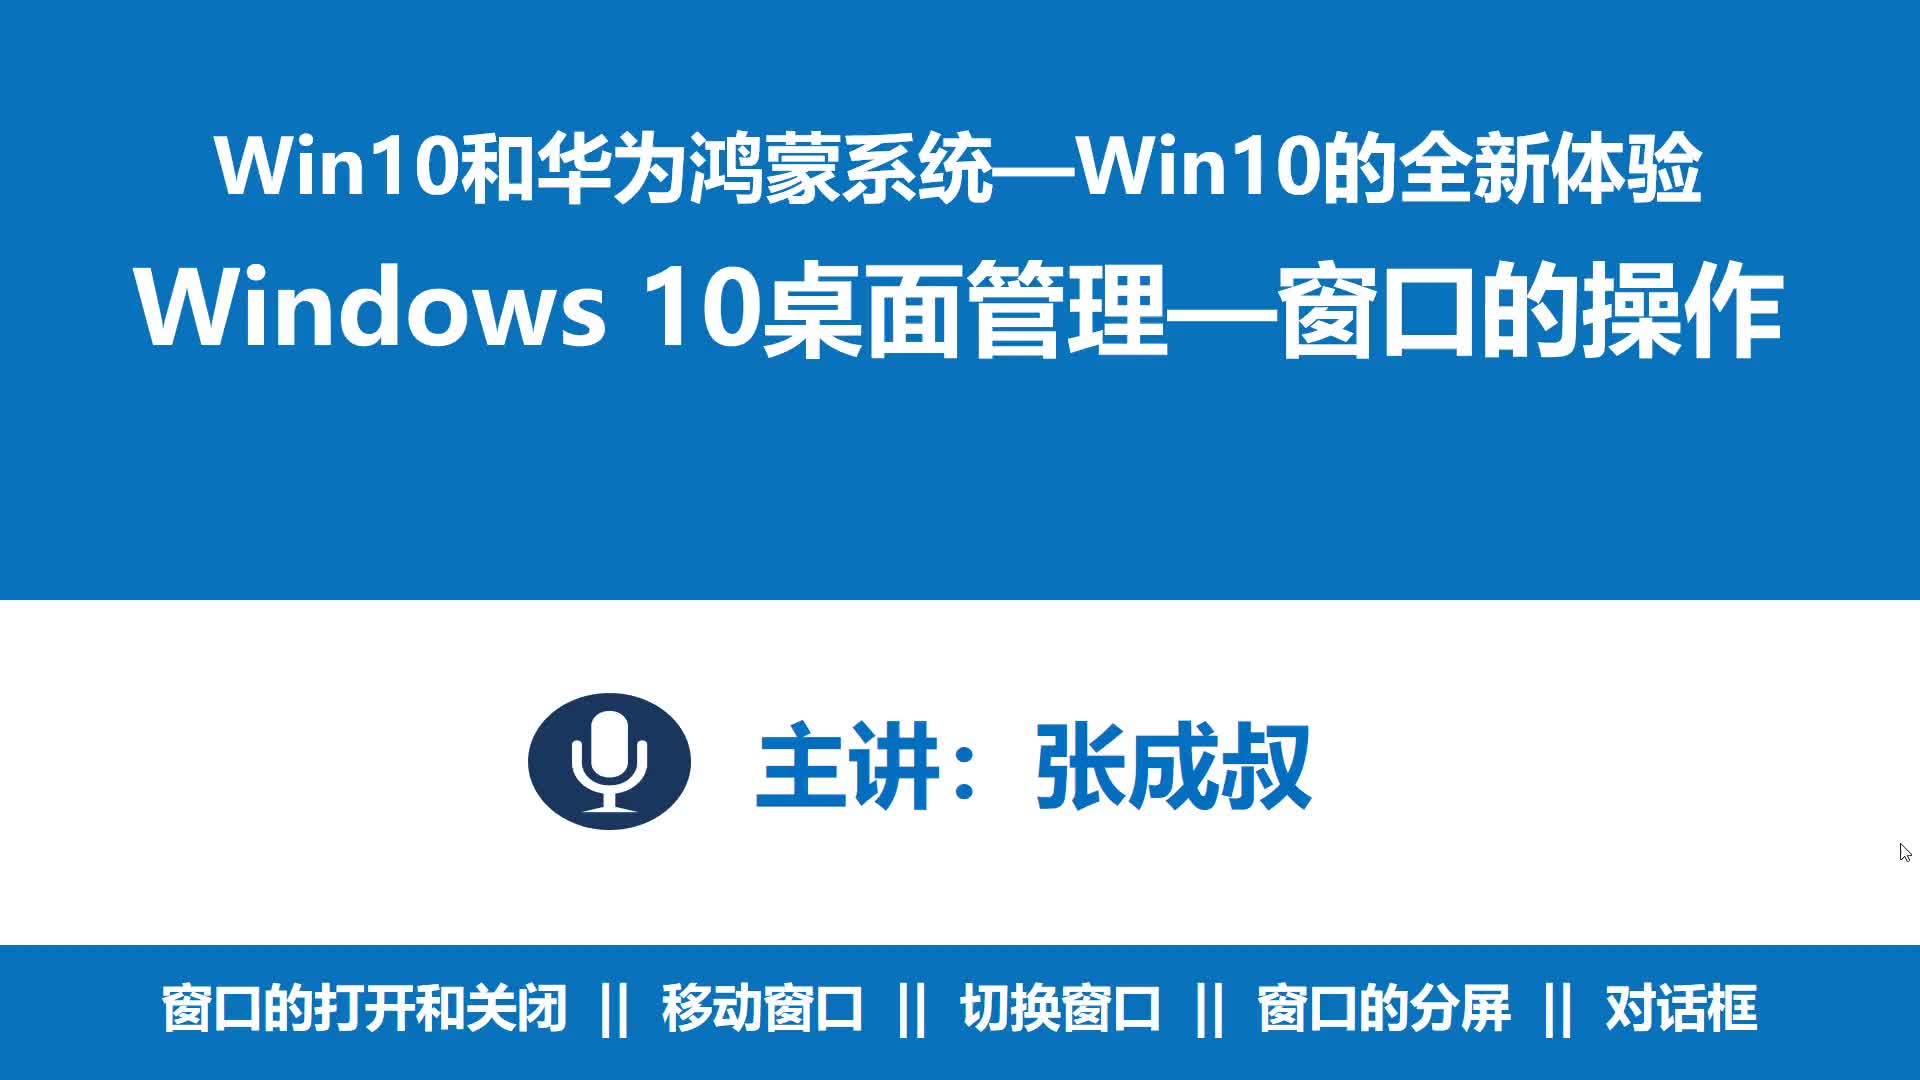 WIN10和华为鸿蒙系统 第1章 1-4-2 WIN 10窗口的操作